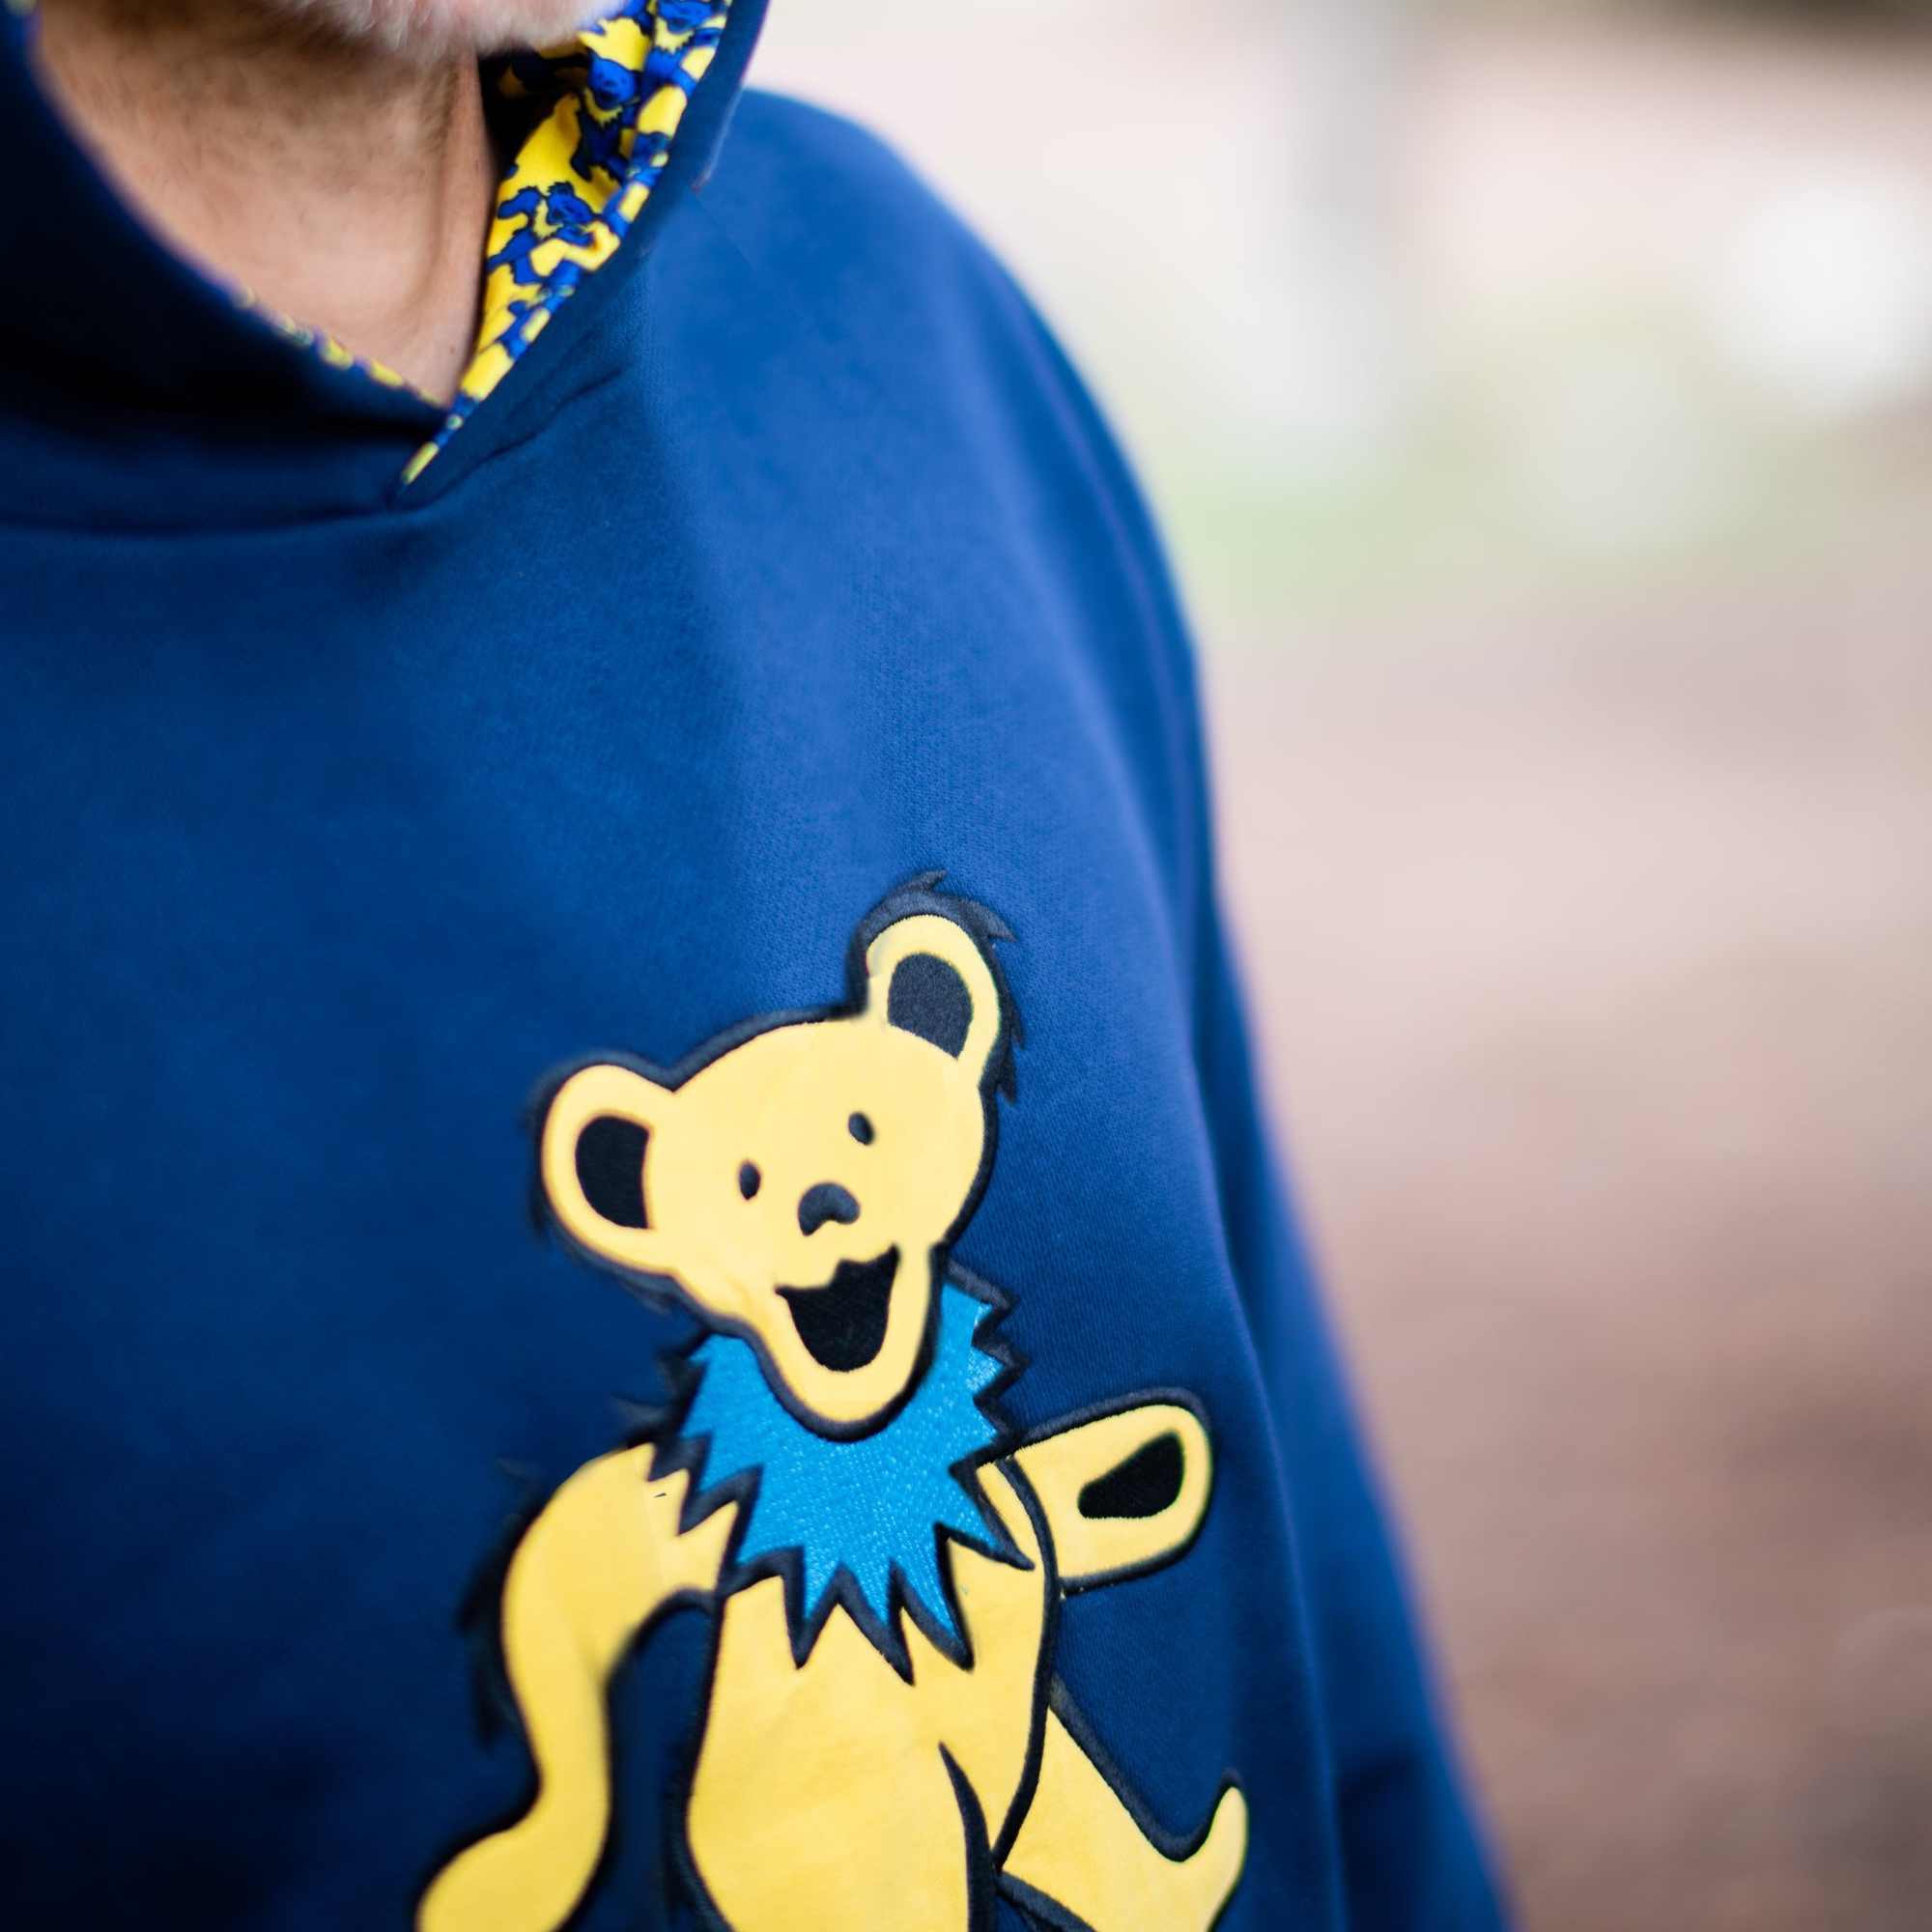 Embroidery Design Grateful Dead Bears